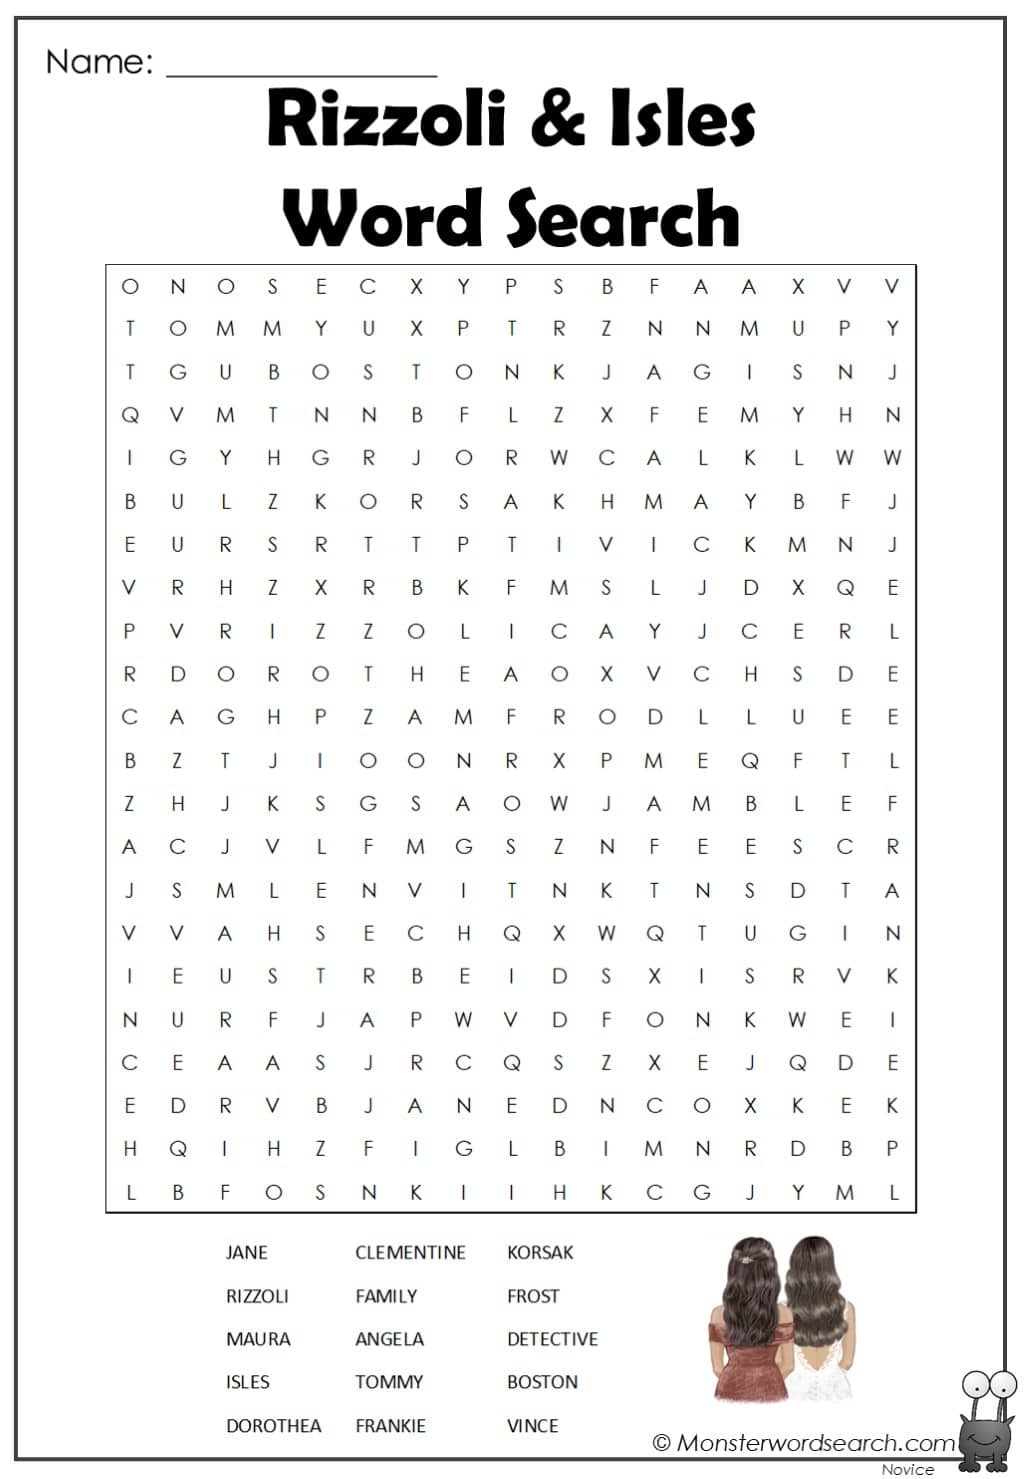 Rizzoli & Isles Word Search